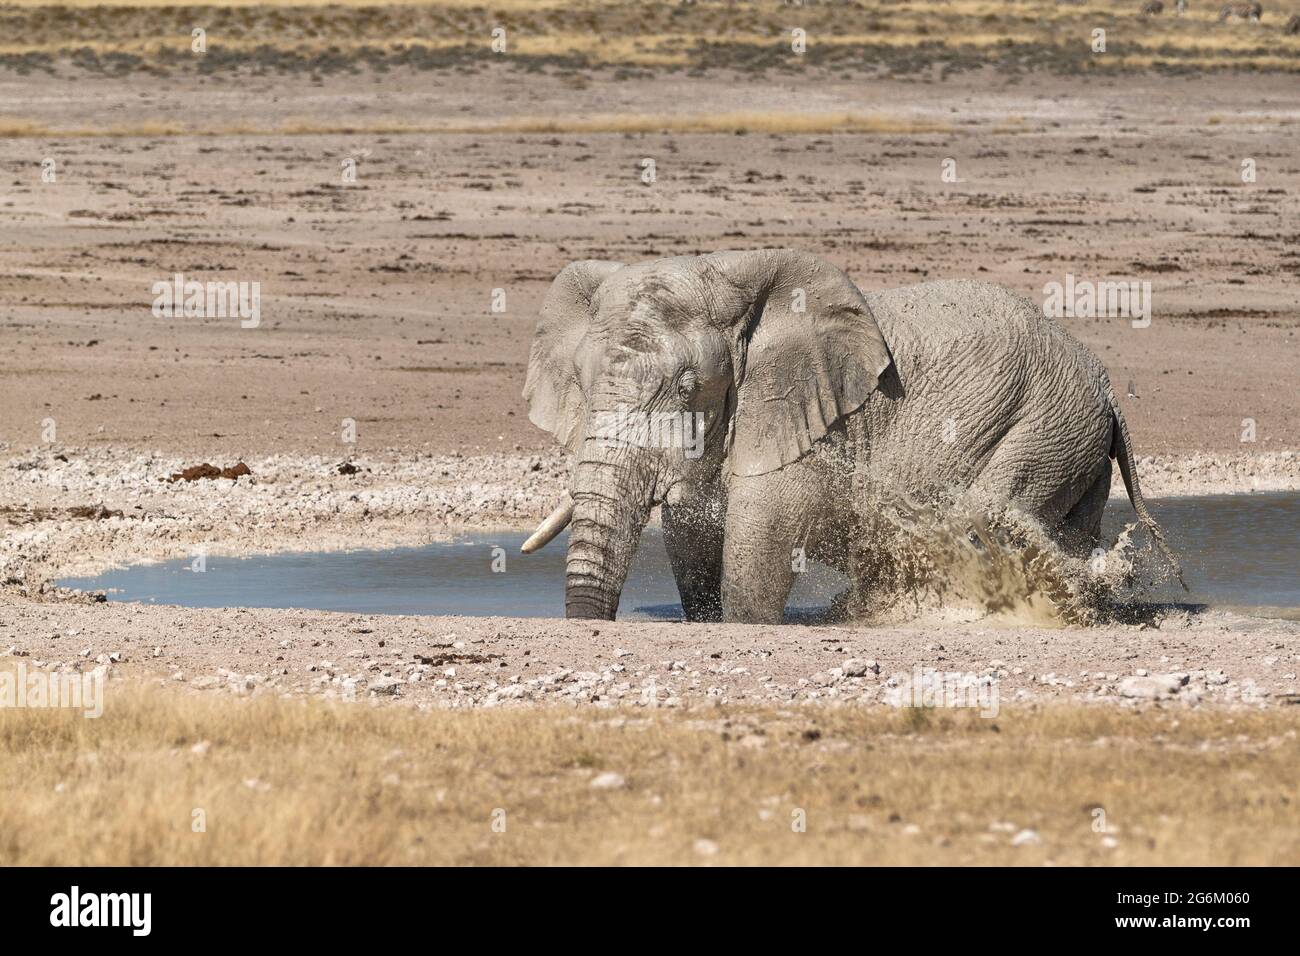 African elephant (Loxodonta africana) water splashing with his legs. Etosha National Park, Namibia, Southern Africa Stock Photo